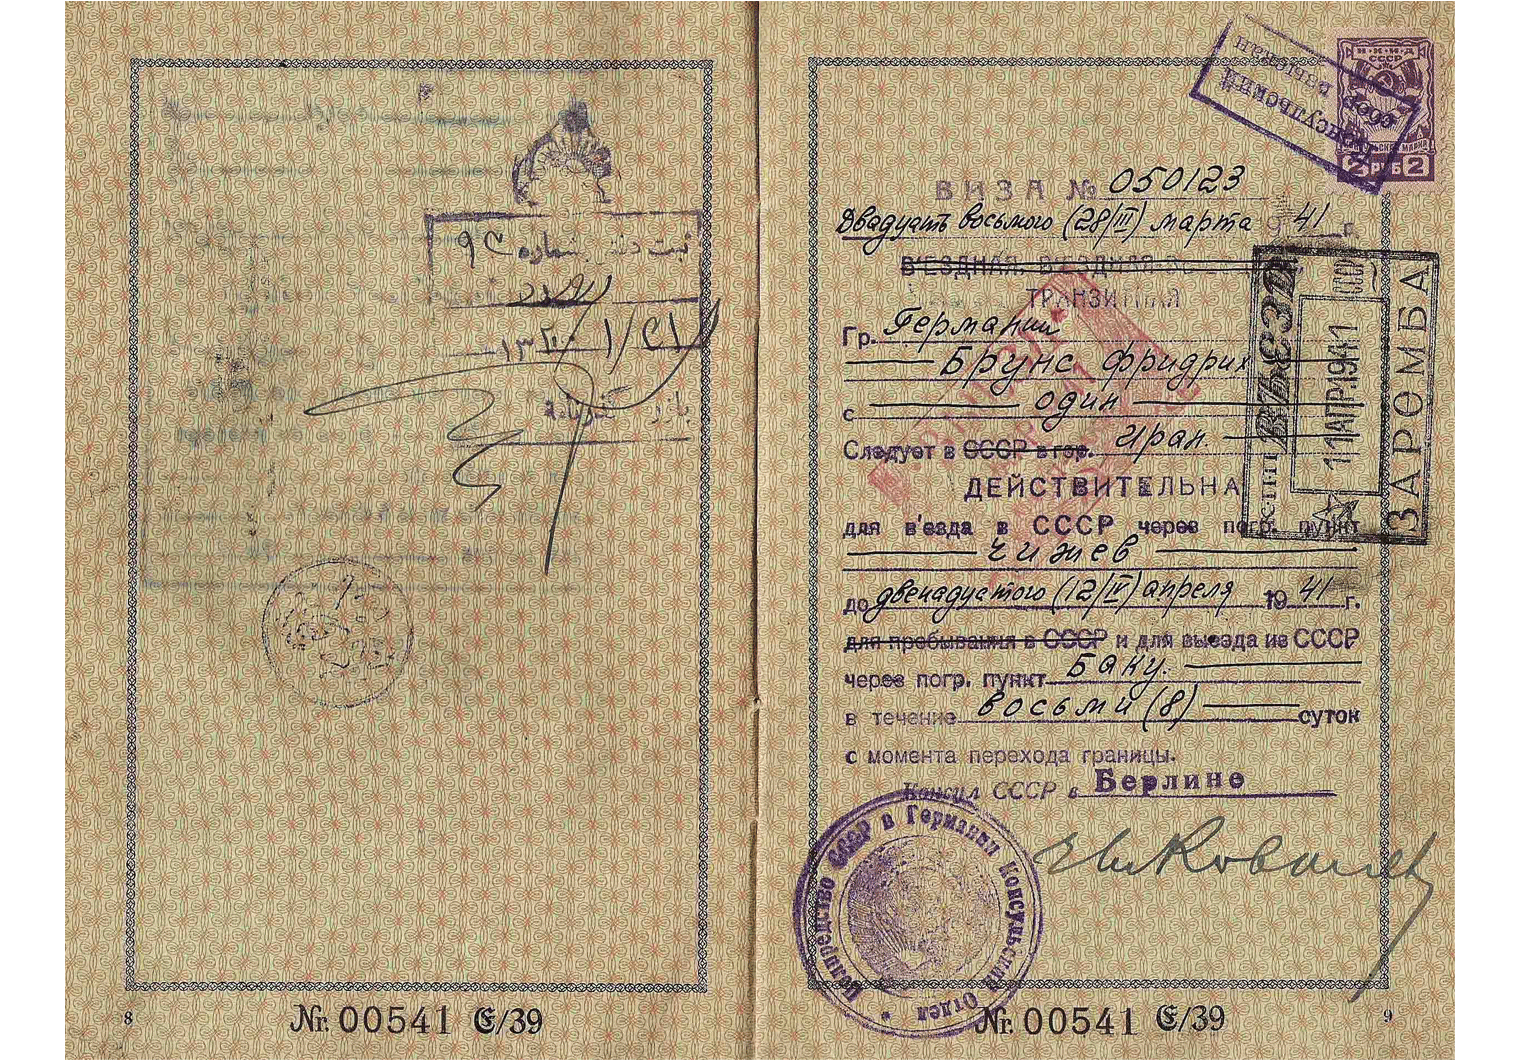 German passport - Soviet visa from Berlin 1941